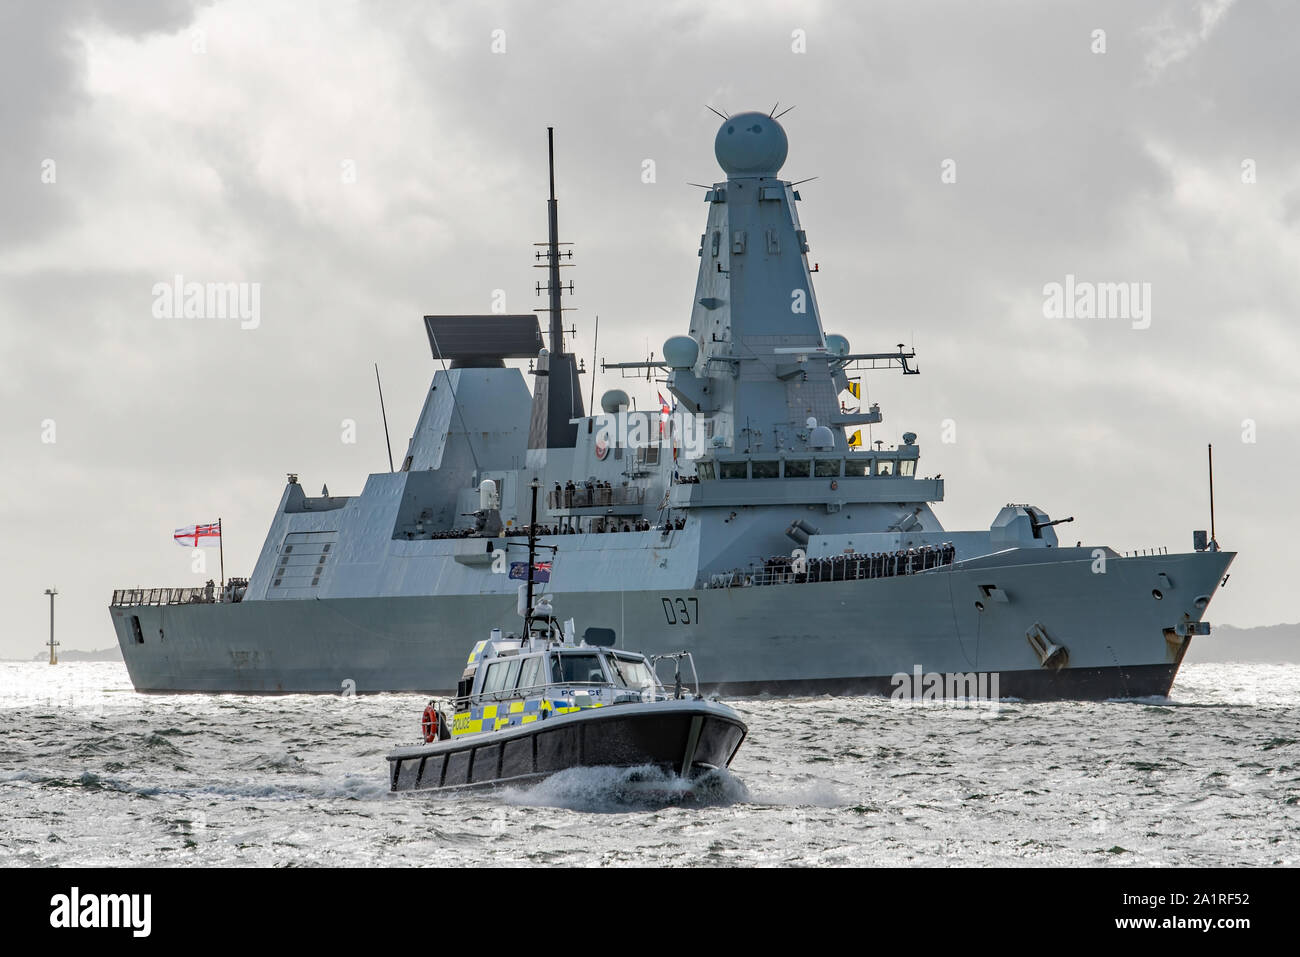 Die Royal Navy Kriegsschiff HMS Duncan (D 37) gesehen wieder in Portsmouth, Großbritannien am 28/9/19 Nach einer längeren Einsatz im Nahen Osten und am Persischen Golf. Stockfoto